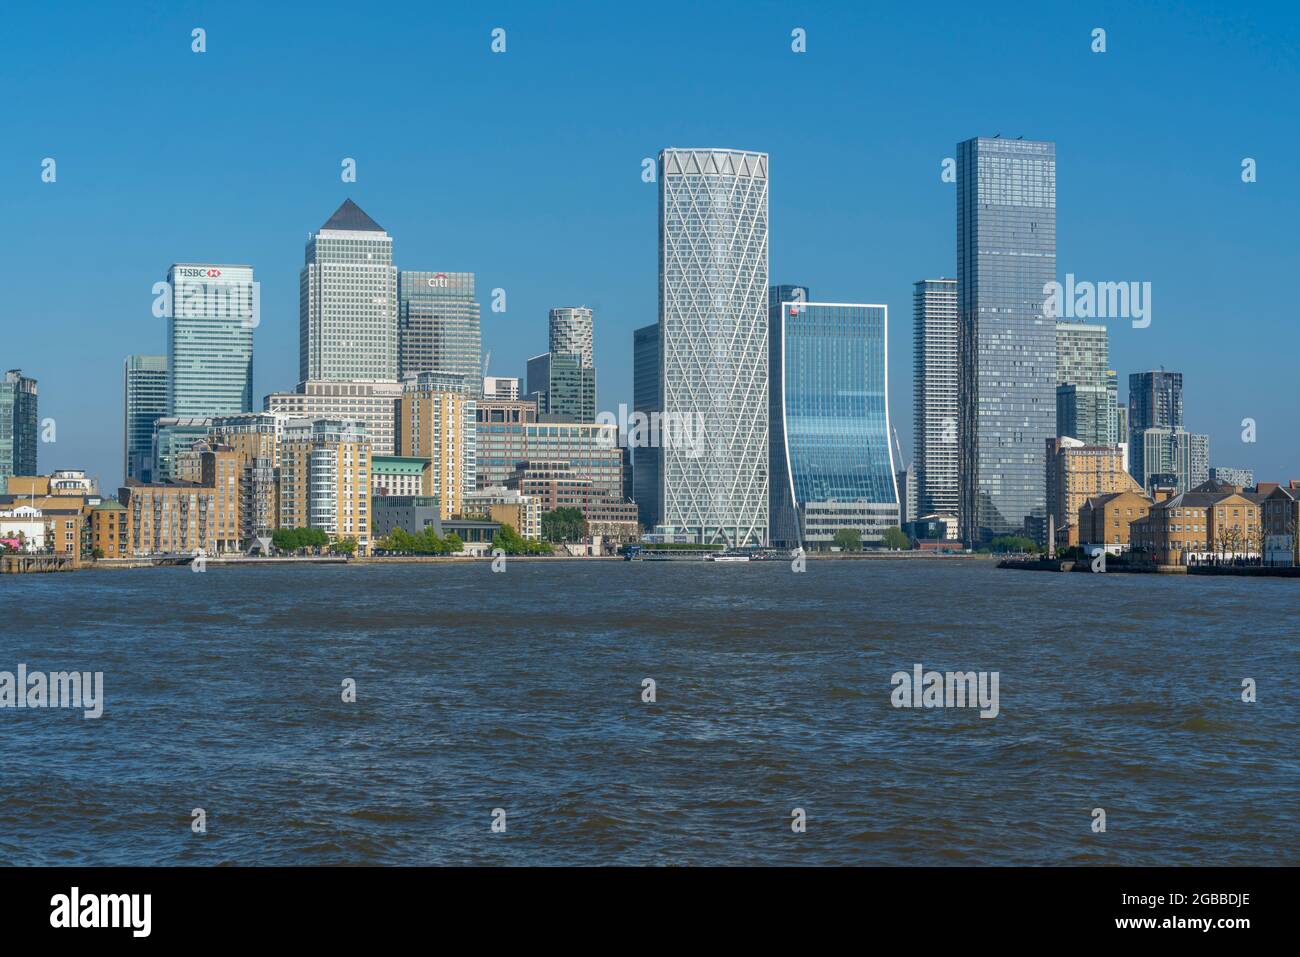 Vue sur les grands bâtiments de Canary Wharf depuis Thames Path, Londres, Angleterre, Royaume-Uni, Europe Banque D'Images